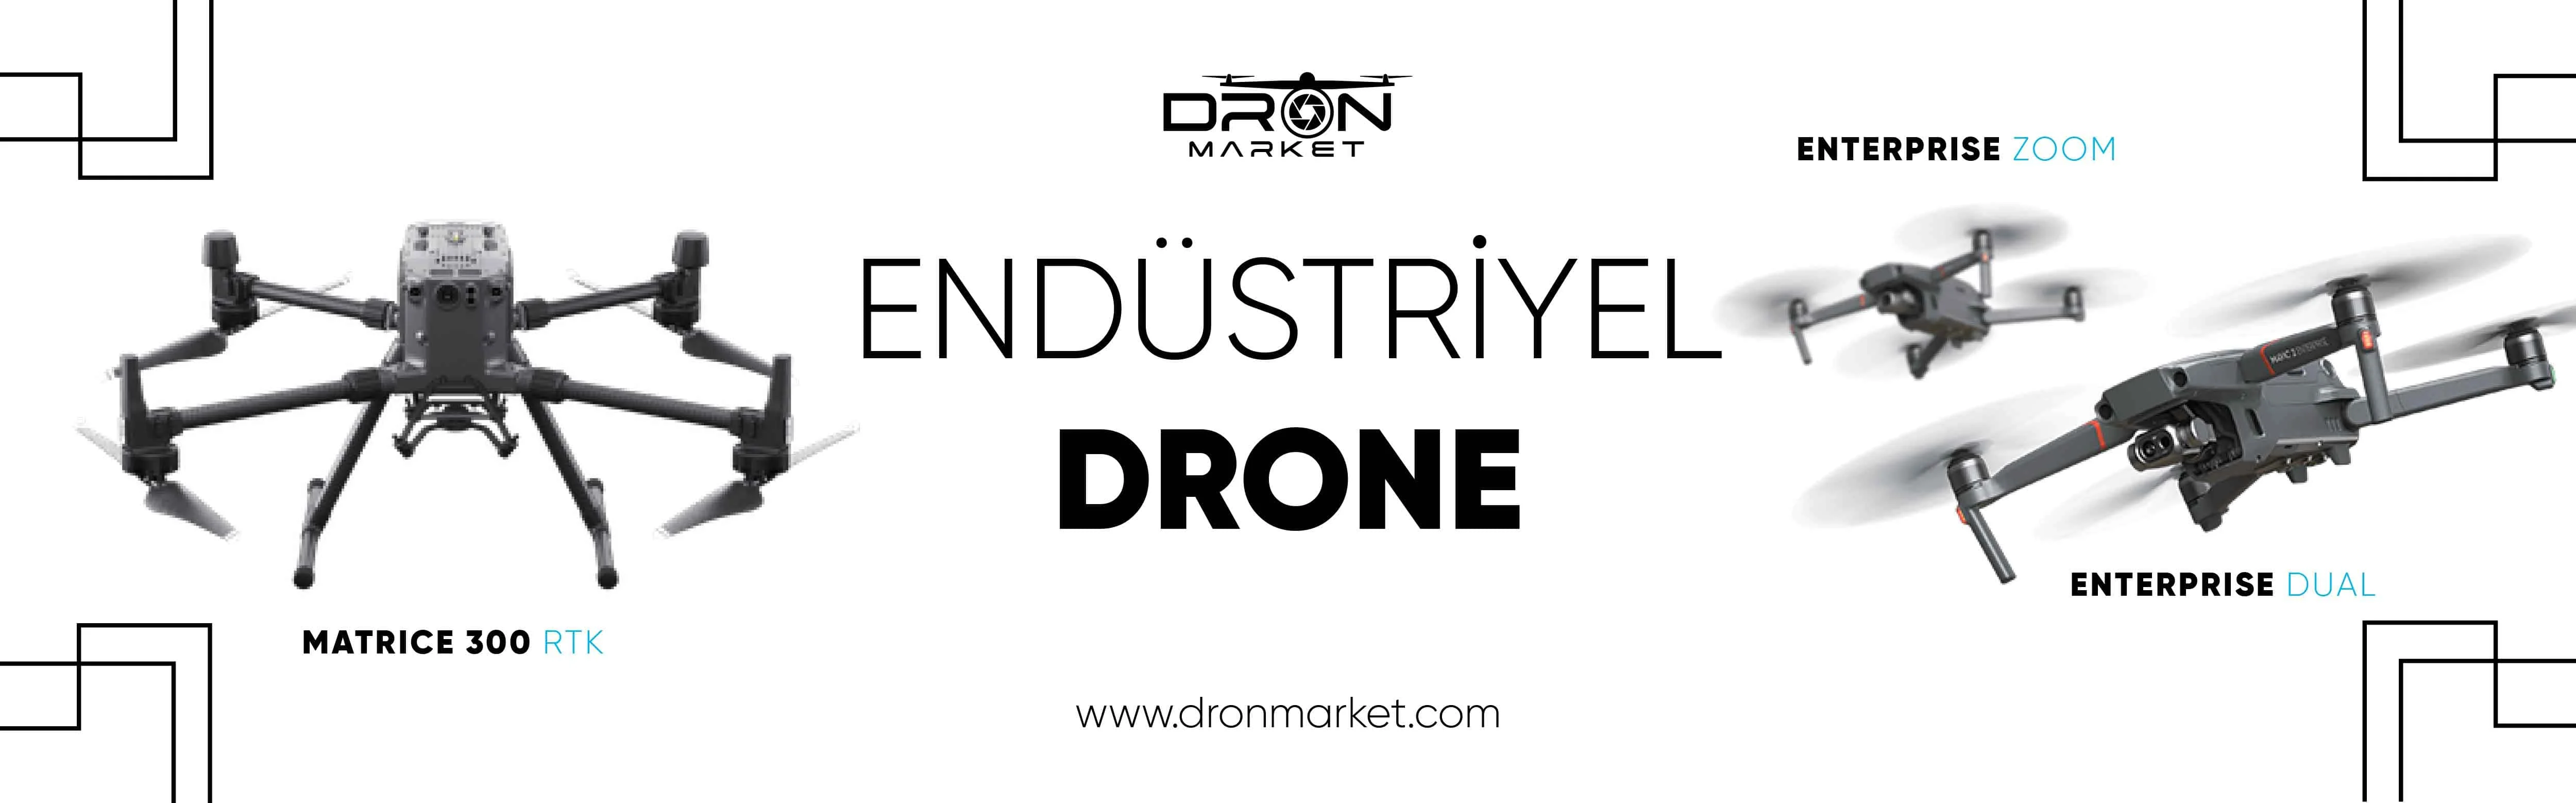 DJI Endüstriyel Dronları-Dronmarket